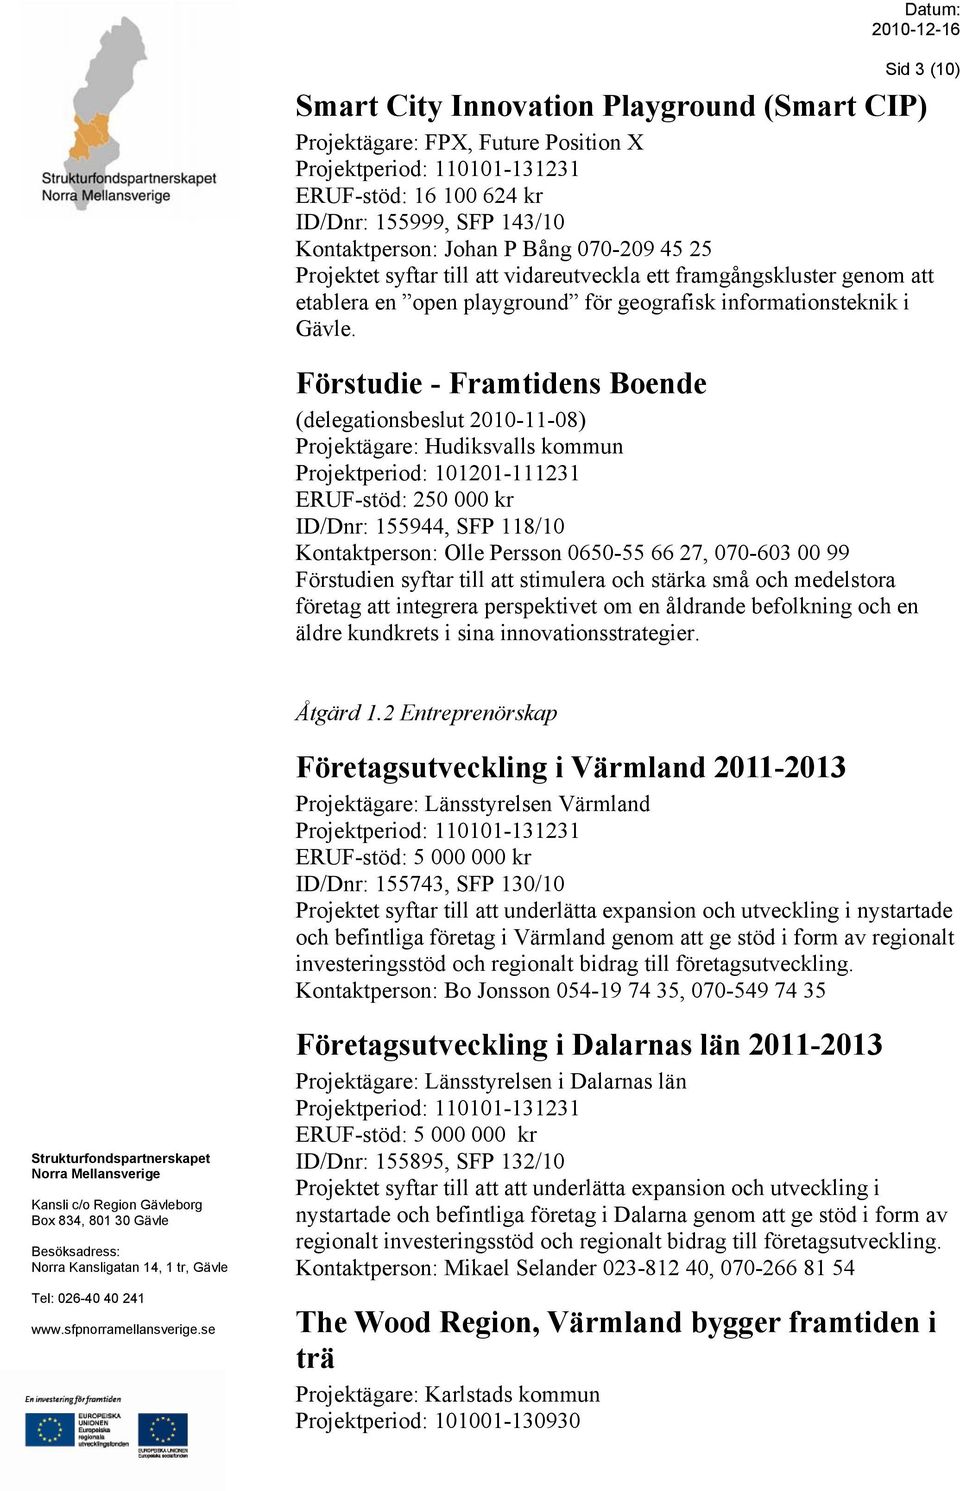 Förstudie - Framtidens Boende (delegationsbeslut 2010-11-08) Projektägare: Hudiksvalls kommun Projektperiod: 101201-111231 ERUF-stöd: 250 000 kr ID/Dnr: 155944, SFP 118/10 Kontaktperson: Olle Persson